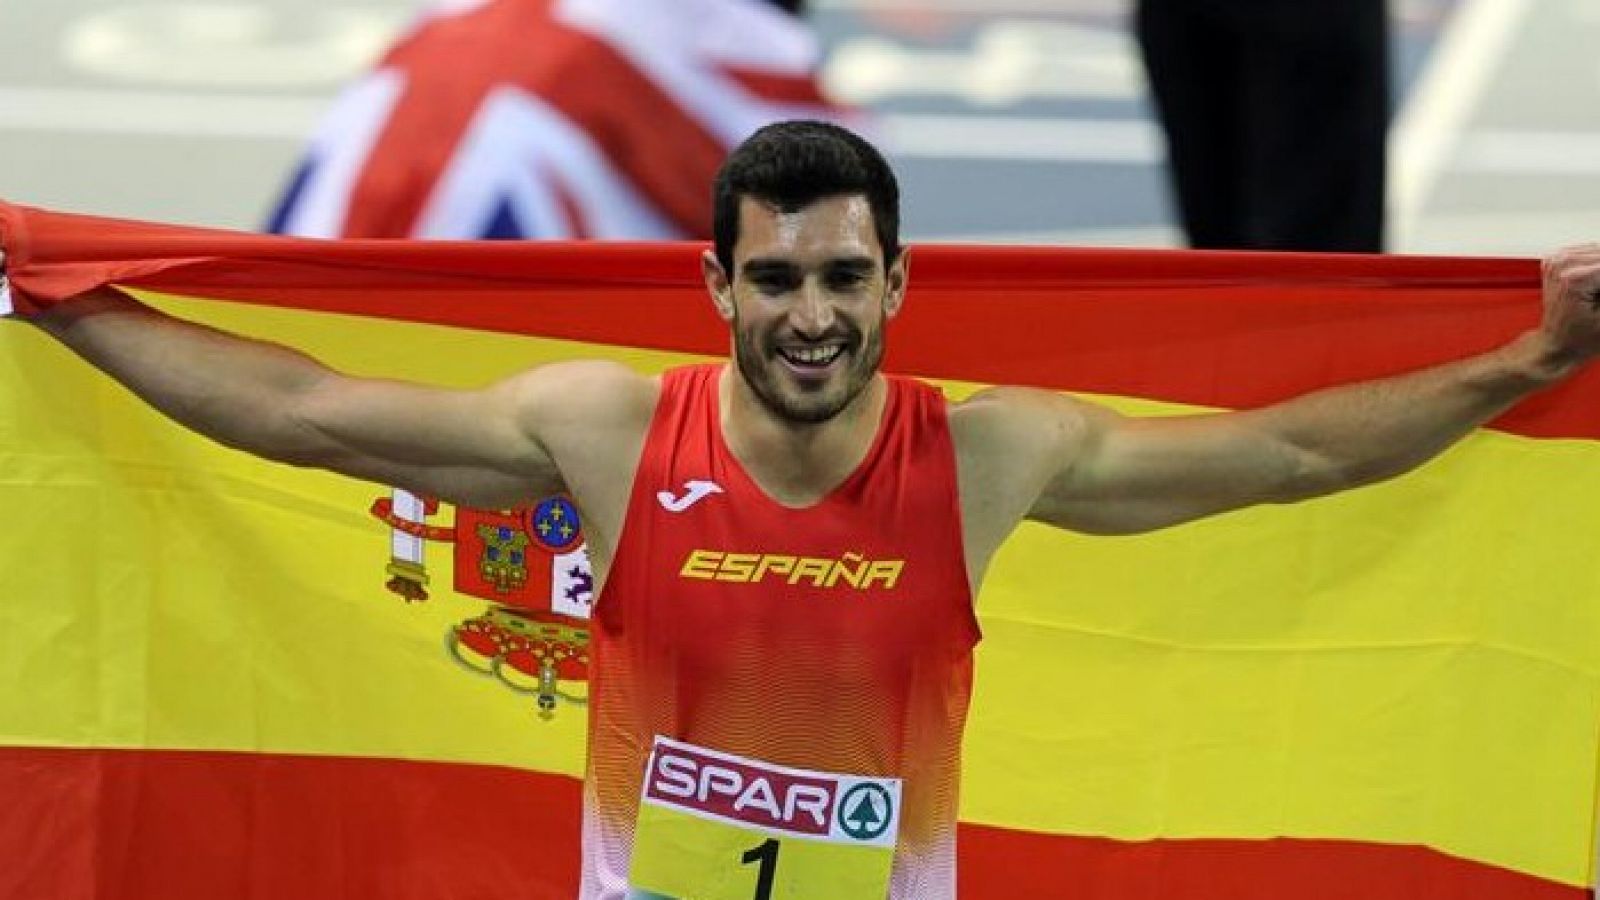 Imagen de Jorge Ureña durante los Europeos de atletismo en pista cubierta de 2019.